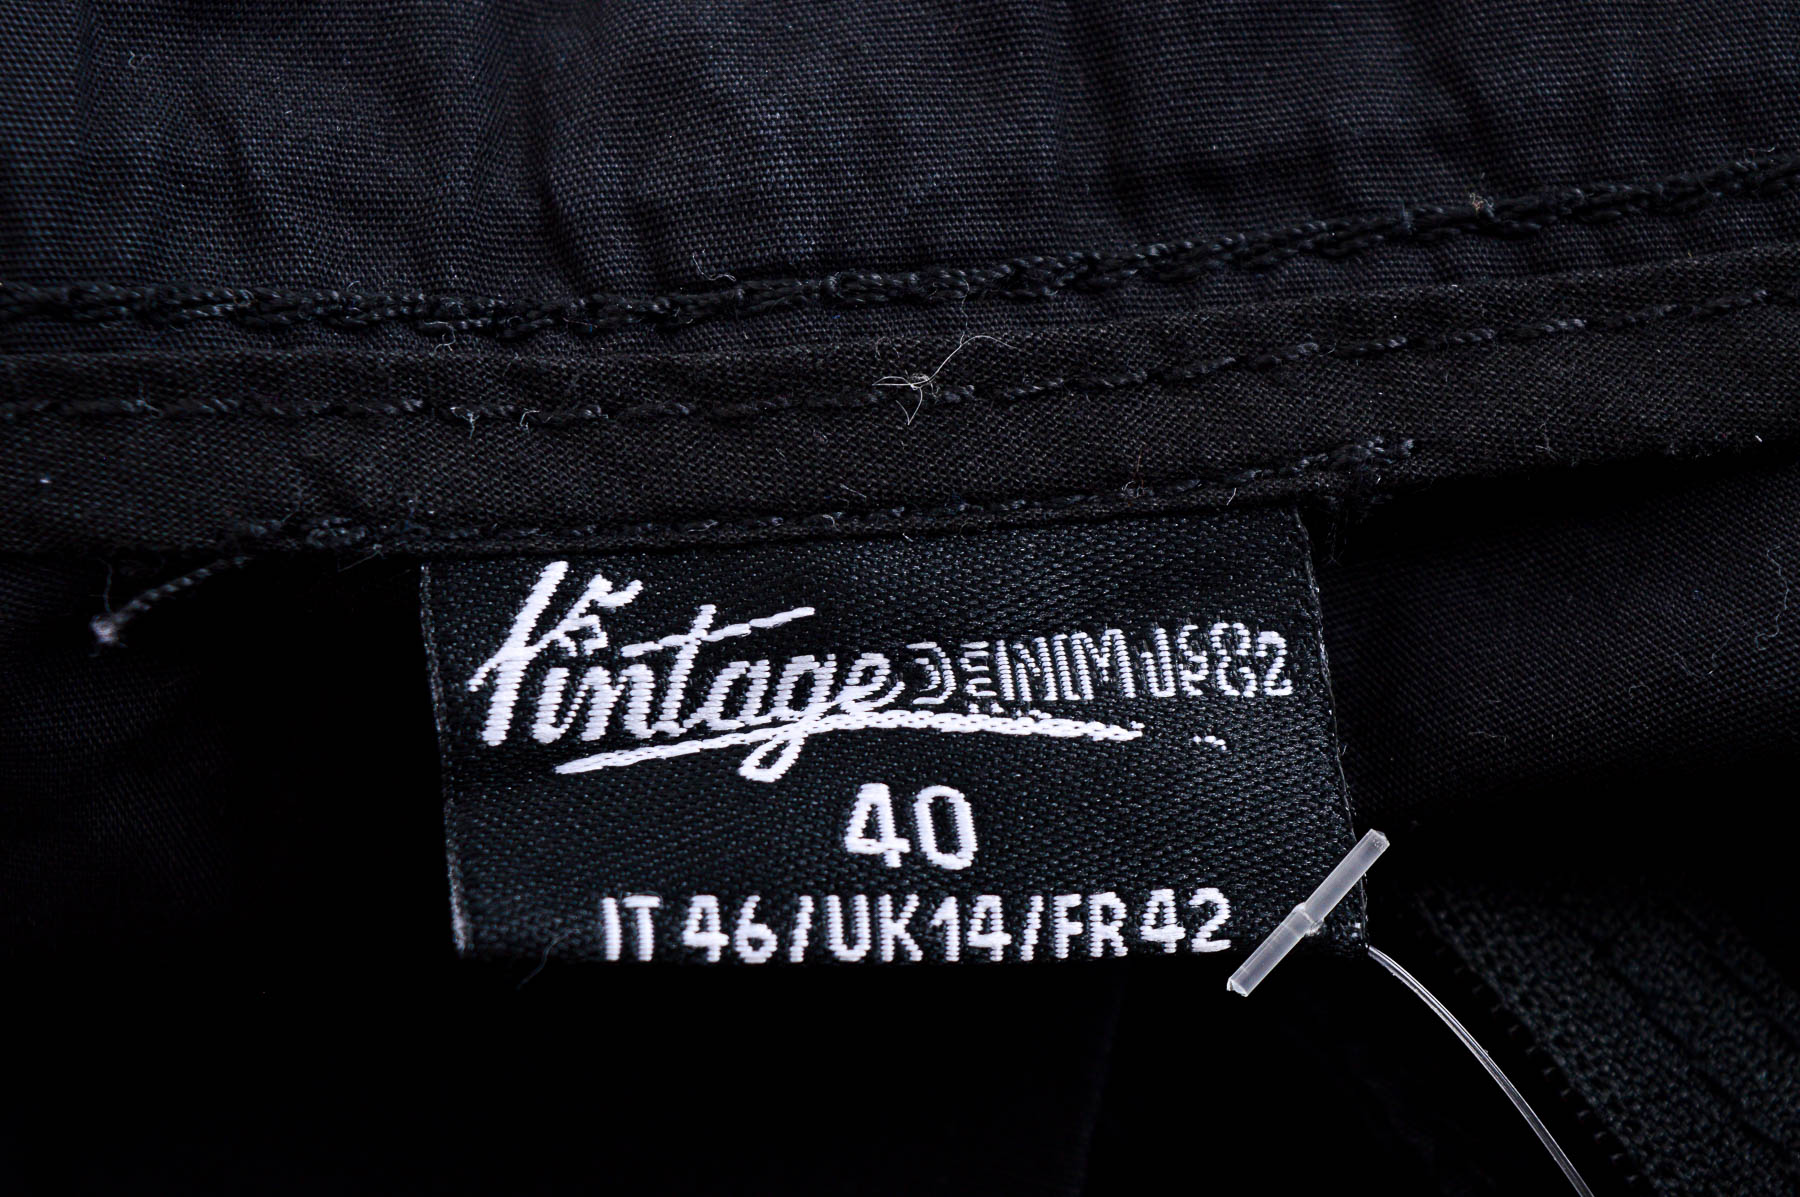 Female shorts - Vintage - 2